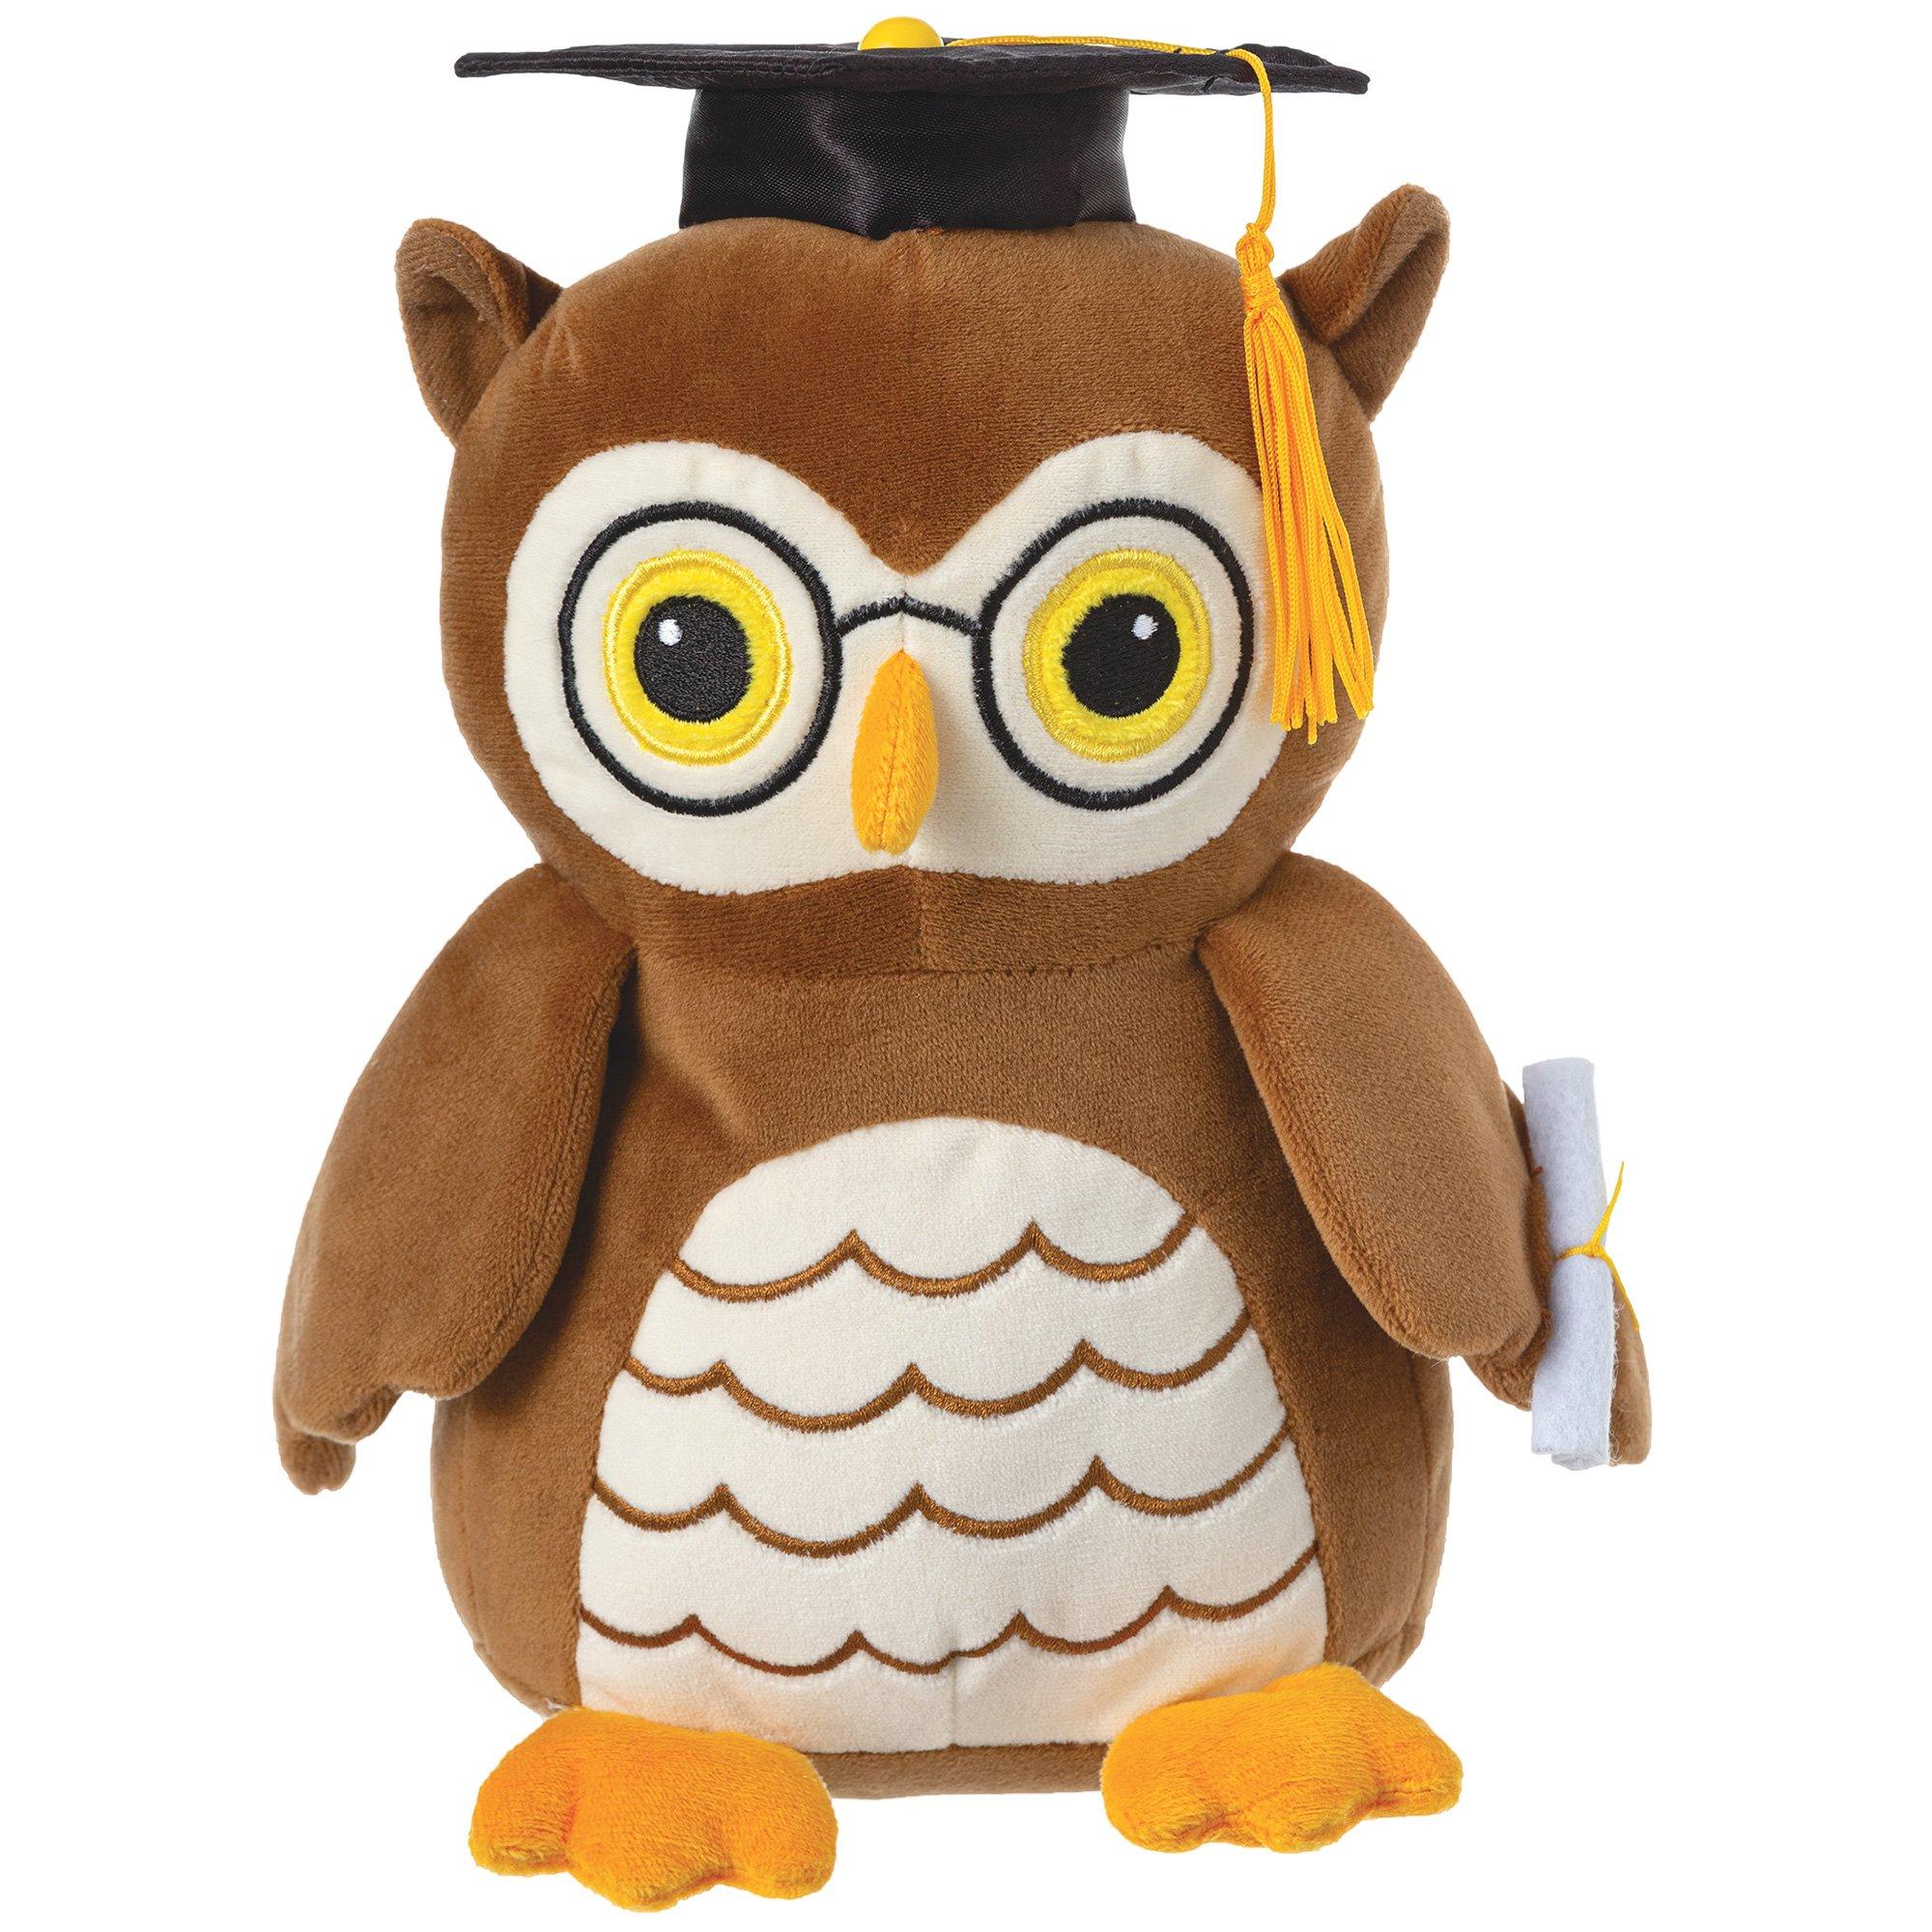 Kivya Birthday party return gifts for kids in bulk owl mugs for